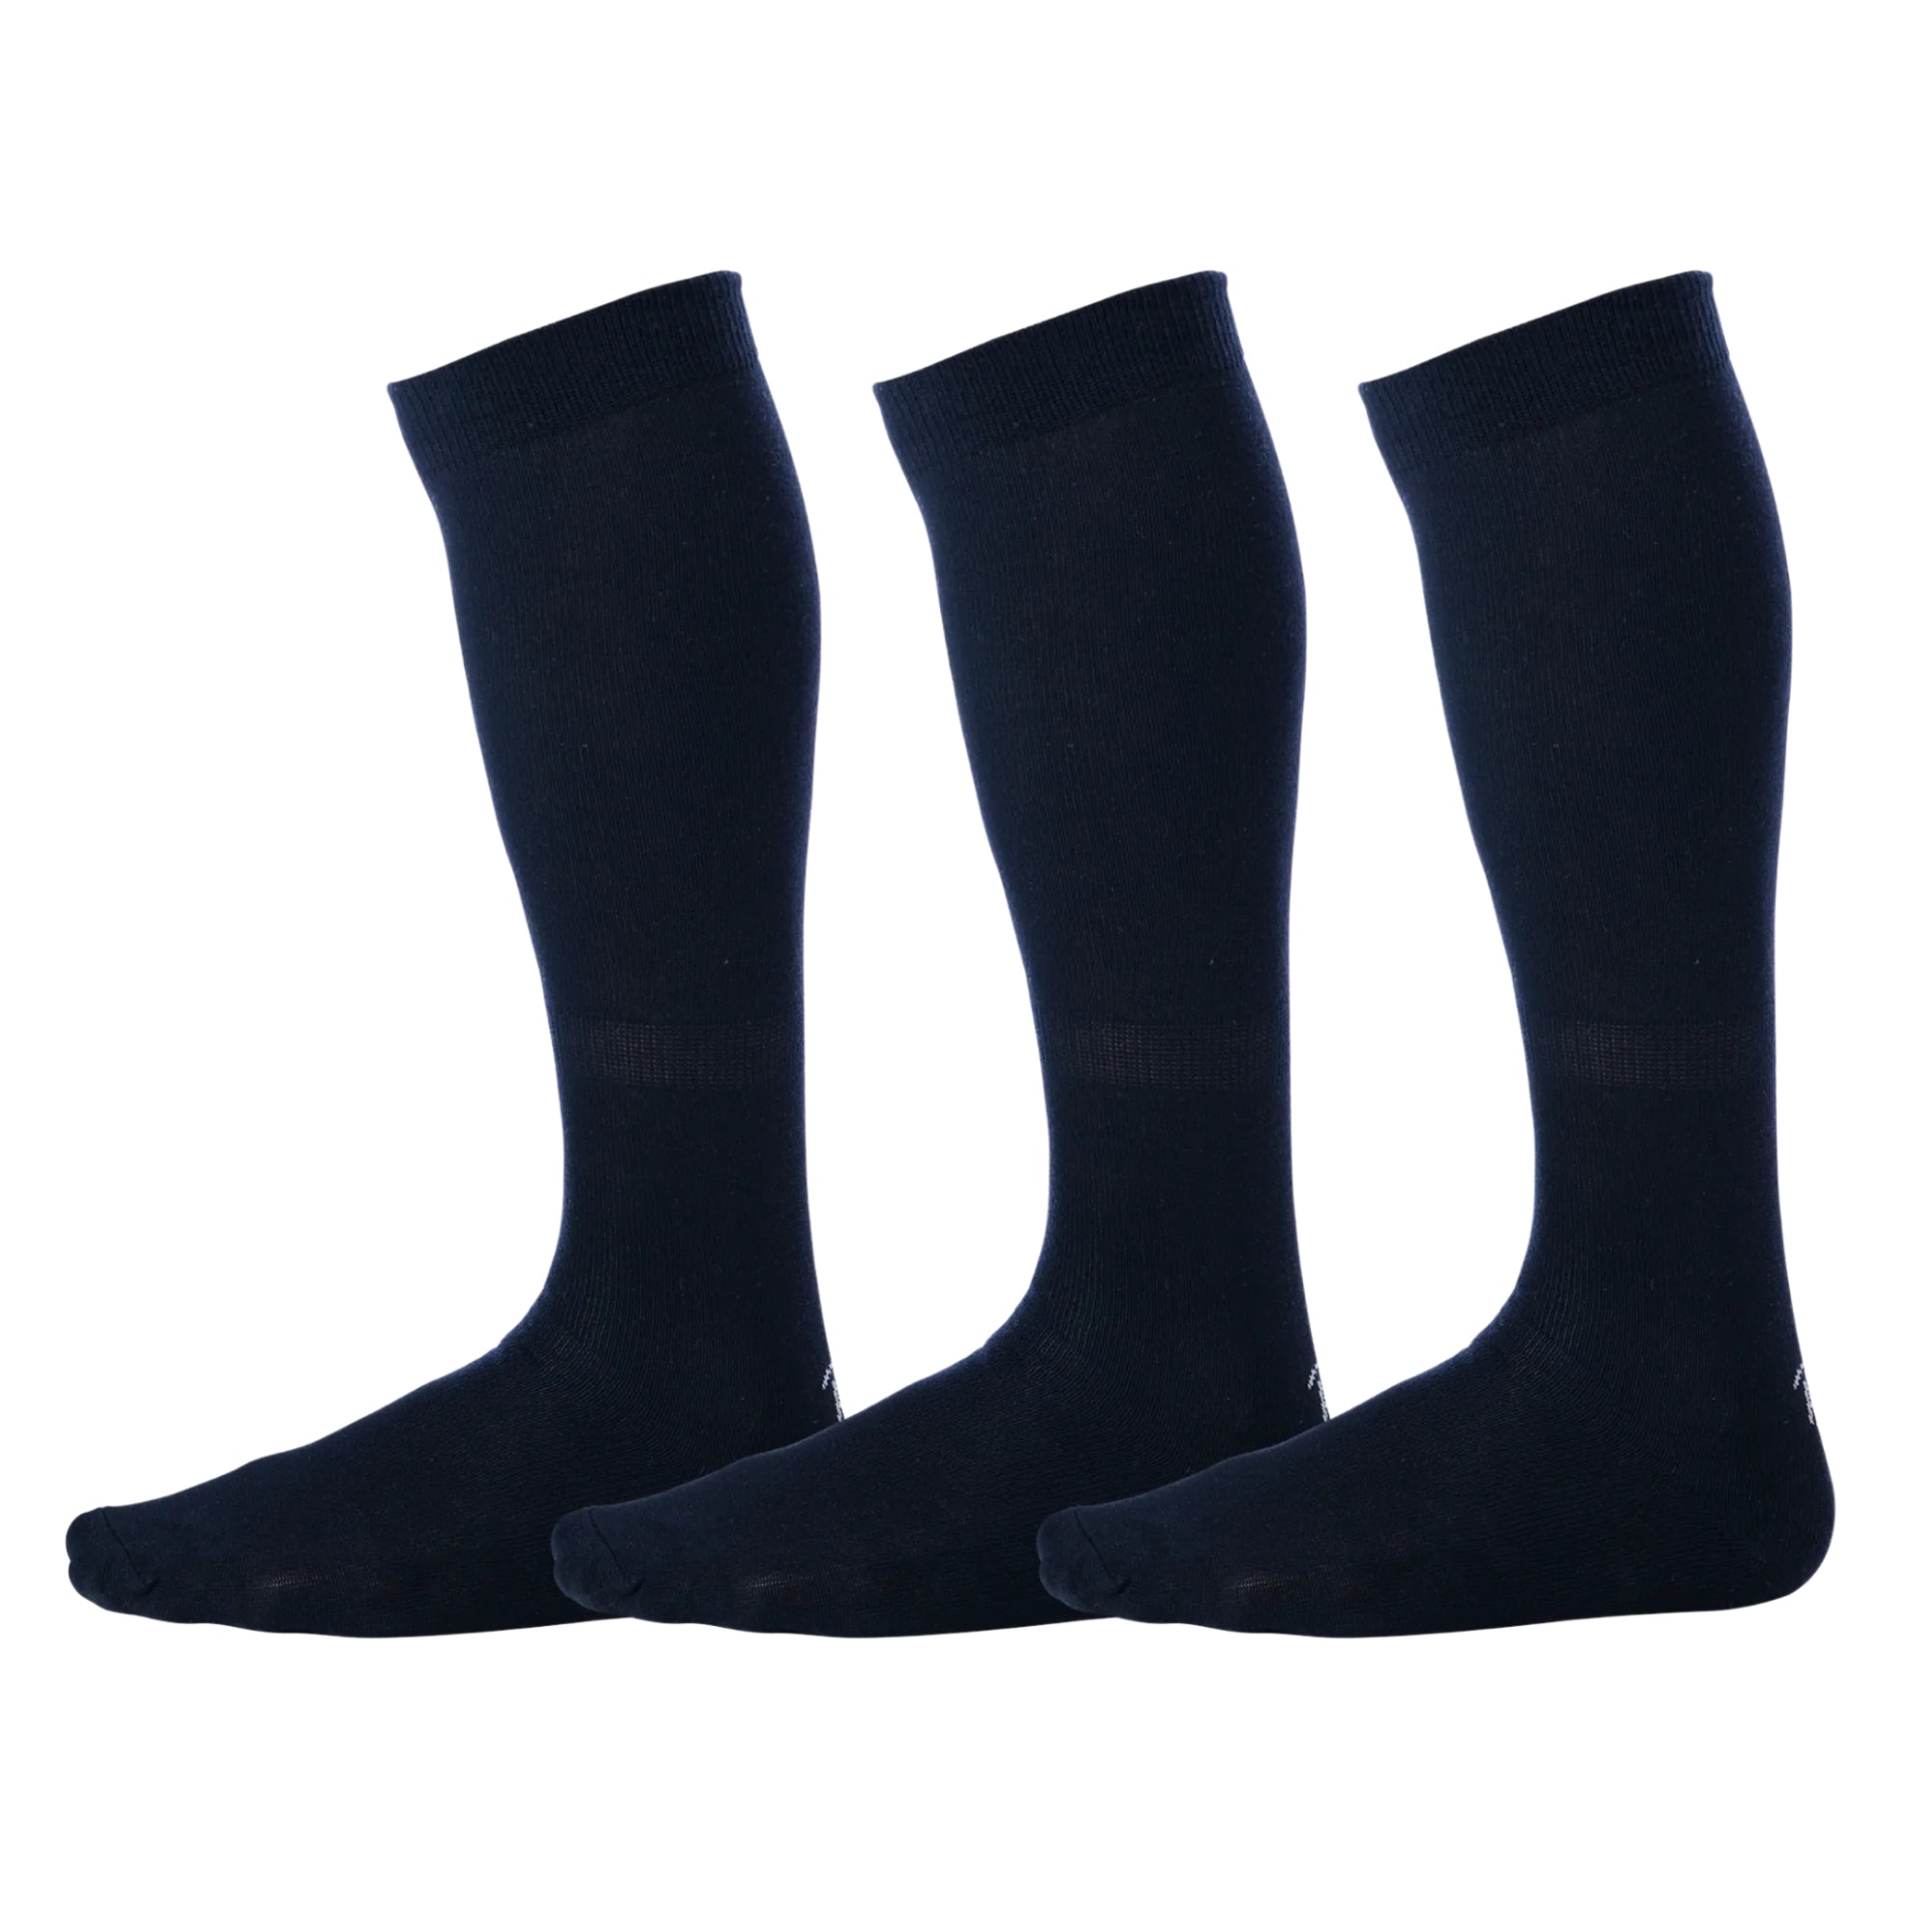 Navy blue over the calf dress socks